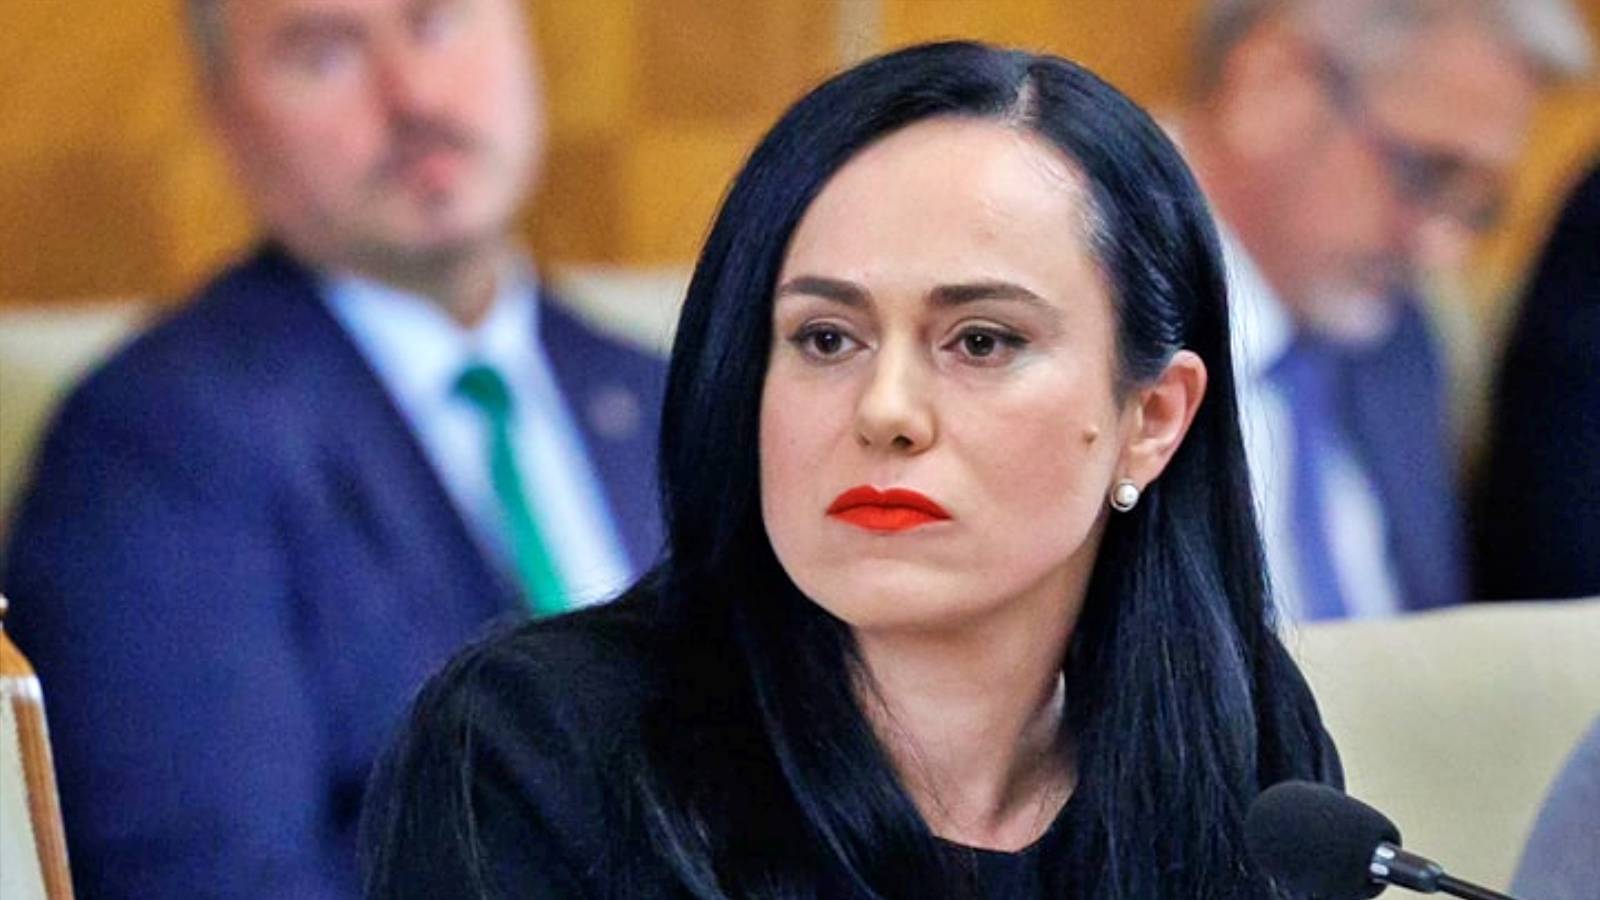 Arbejdsminister Embedsmand LAST MOMENT Lov vedtaget Rumænien